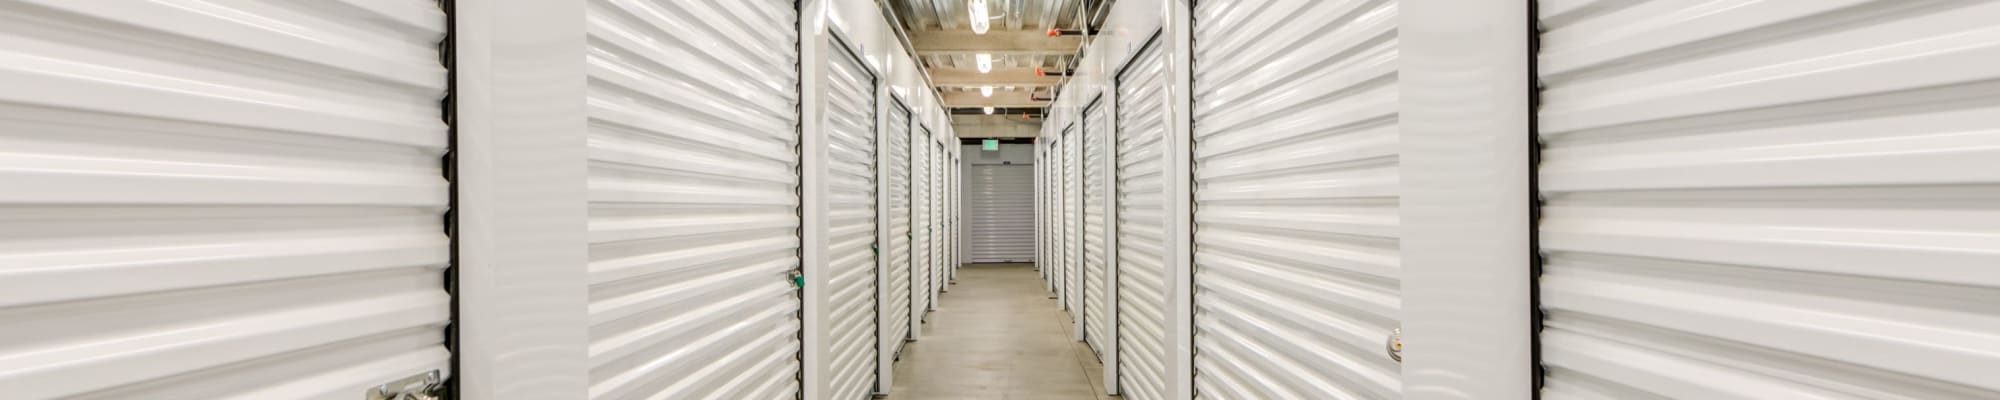 Self storage units in Storage Etc... Menifee in Menifee, California